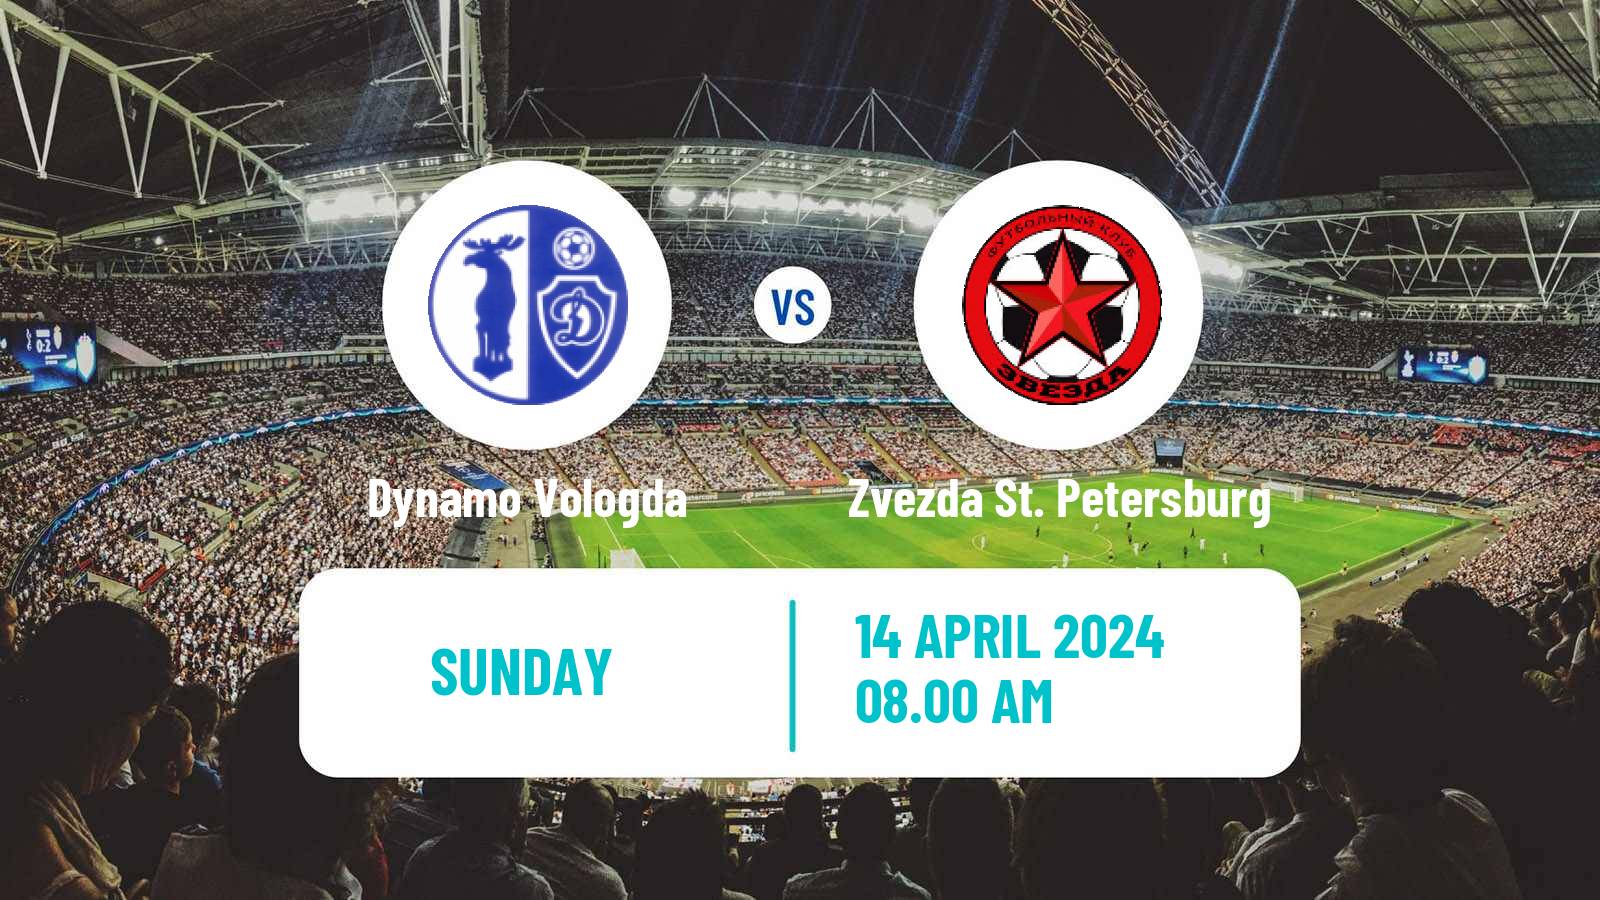 Soccer FNL 2 Division B Group 2 Dynamo Vologda - Zvezda St. Petersburg